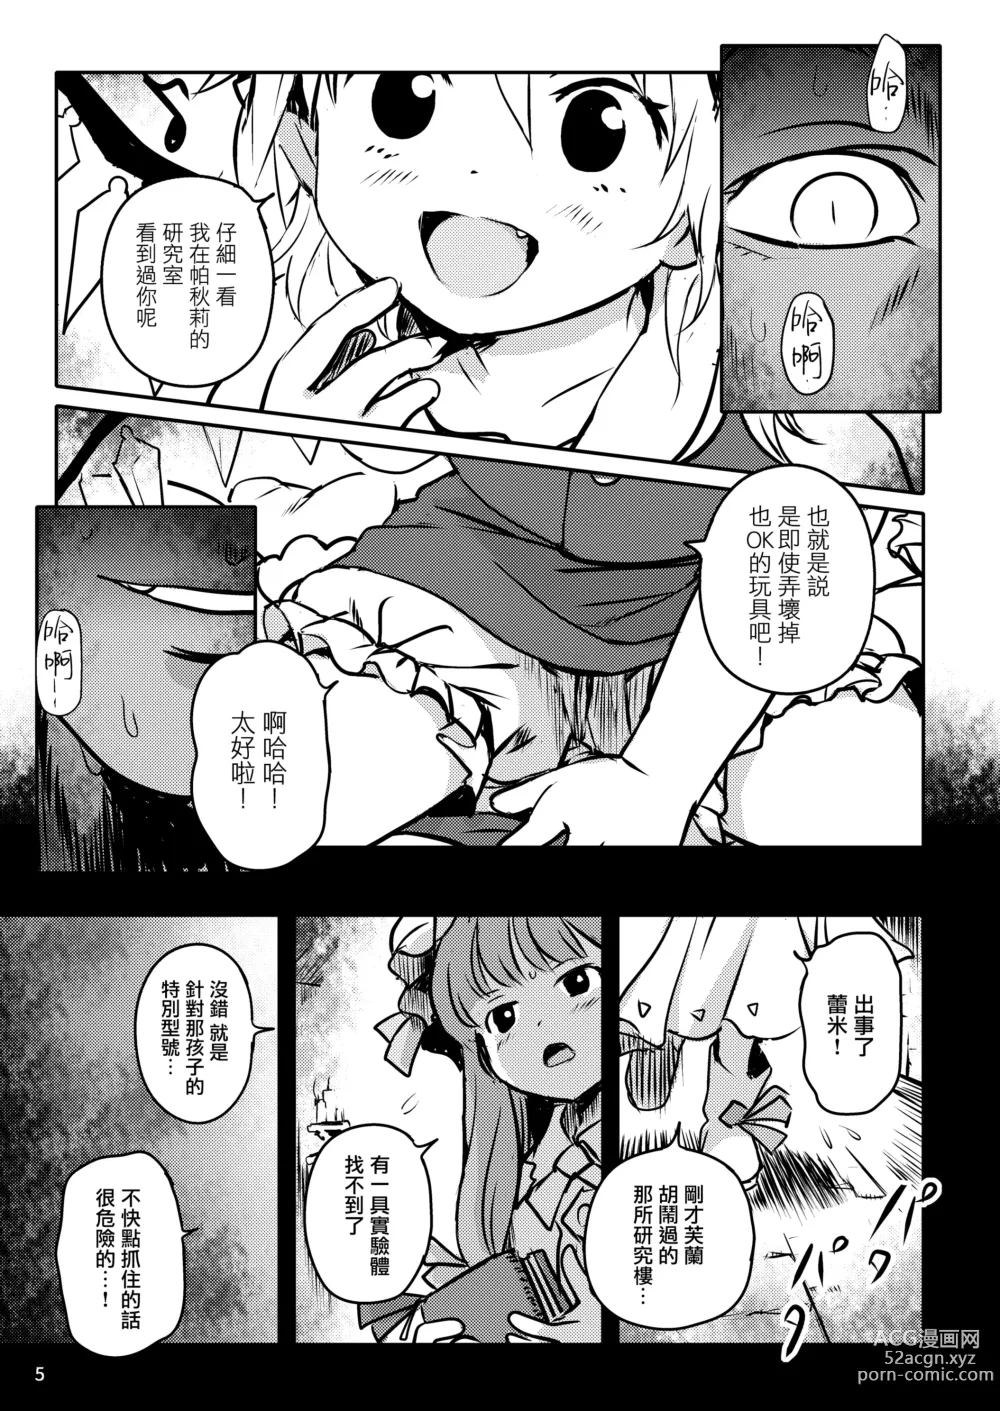 Page 5 of doujinshi 是好孩子吧!芙蘭醬!